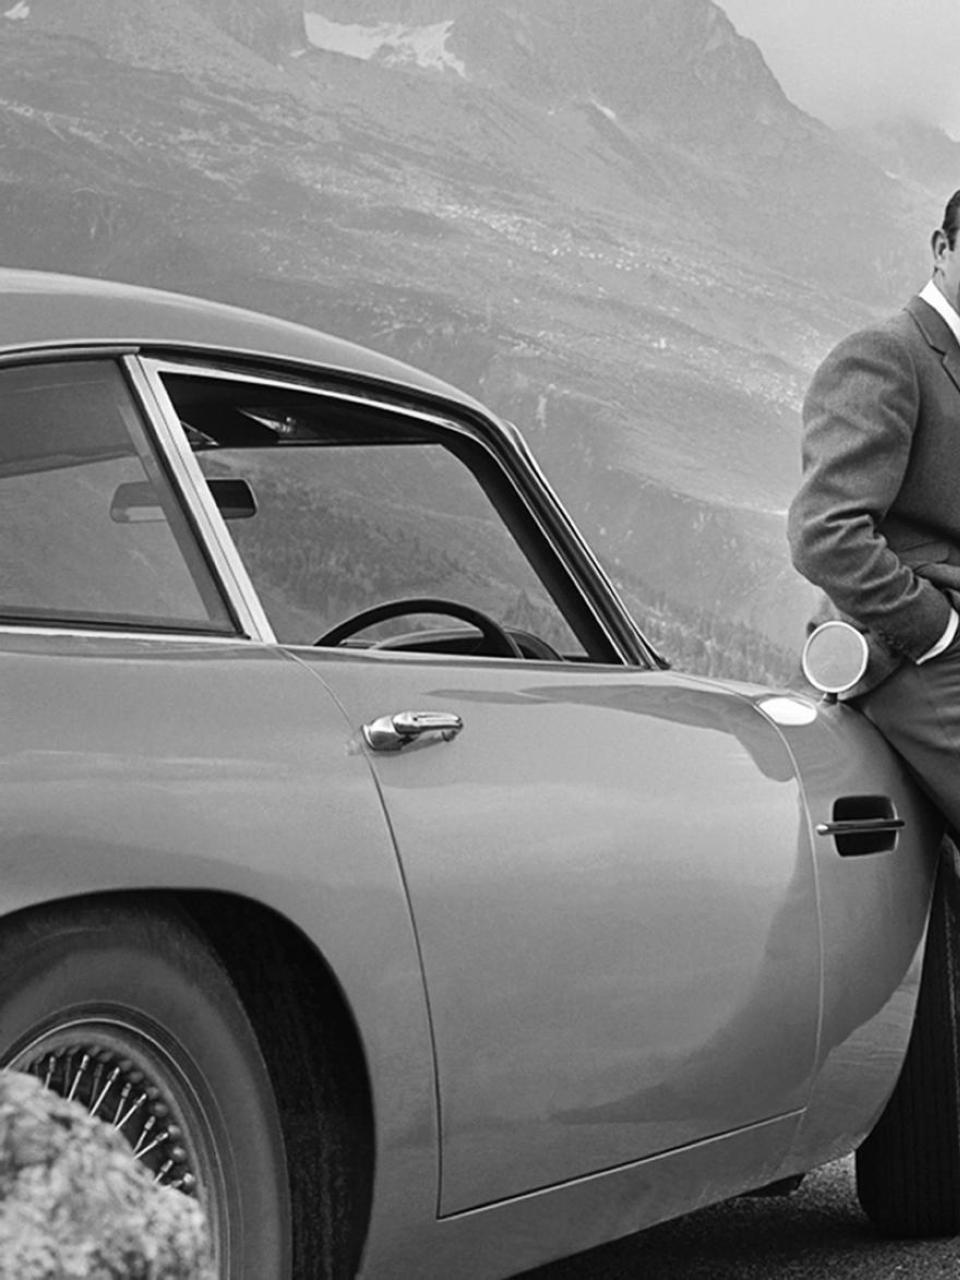 Warten auf Auric Goldfinger auf dem Furkapass: James Bond alias 007 auf Verfolgungsjagd im Aston Martin DB5 in der Schweiz